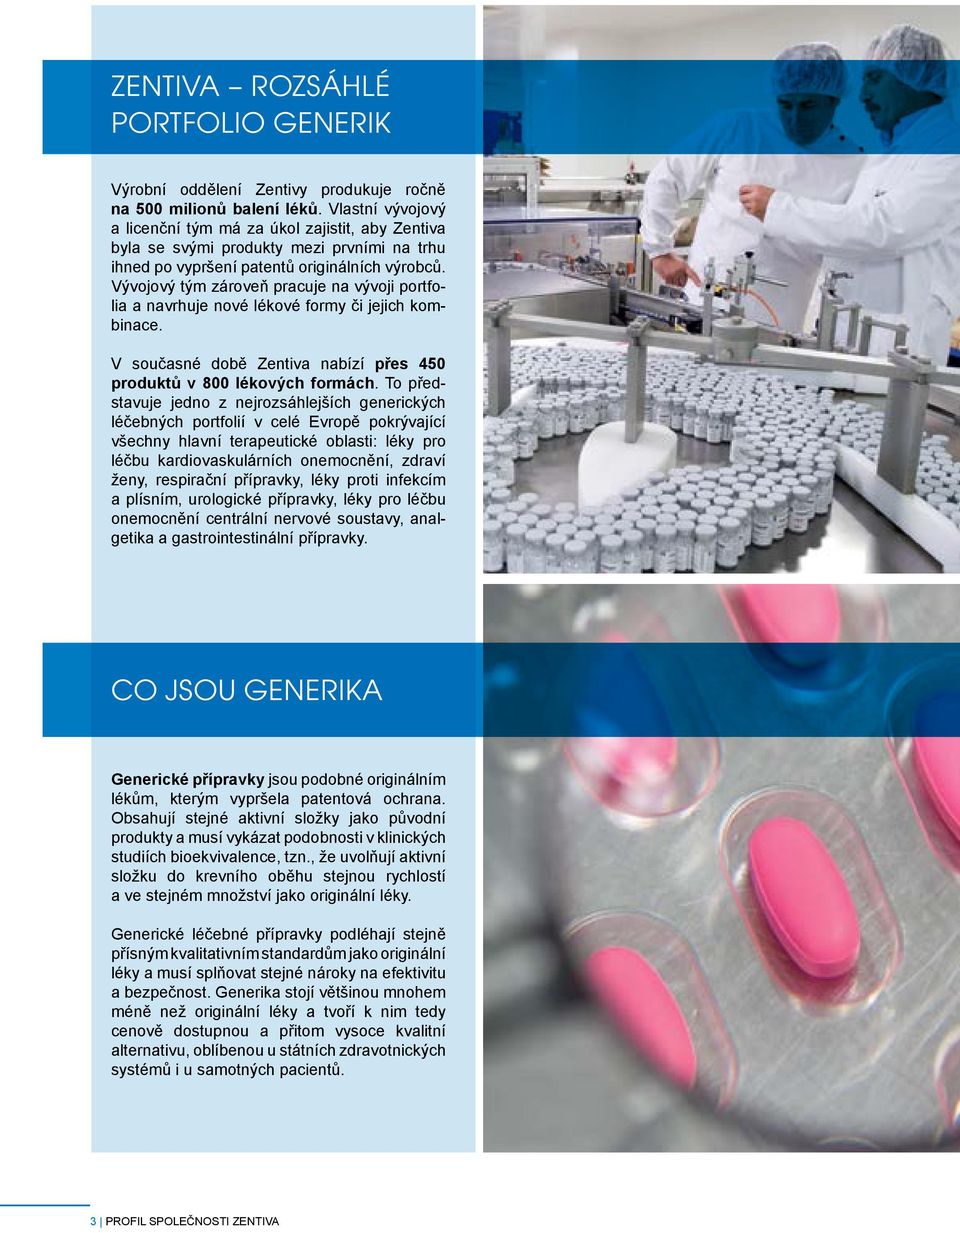 Vývojový tým zároveň pracuje na vývoji portfolia a navrhuje nové lékové formy či jejich kombinace. V současné době Zentiva nabízí přes 450 produktů v 800 lékových formách.